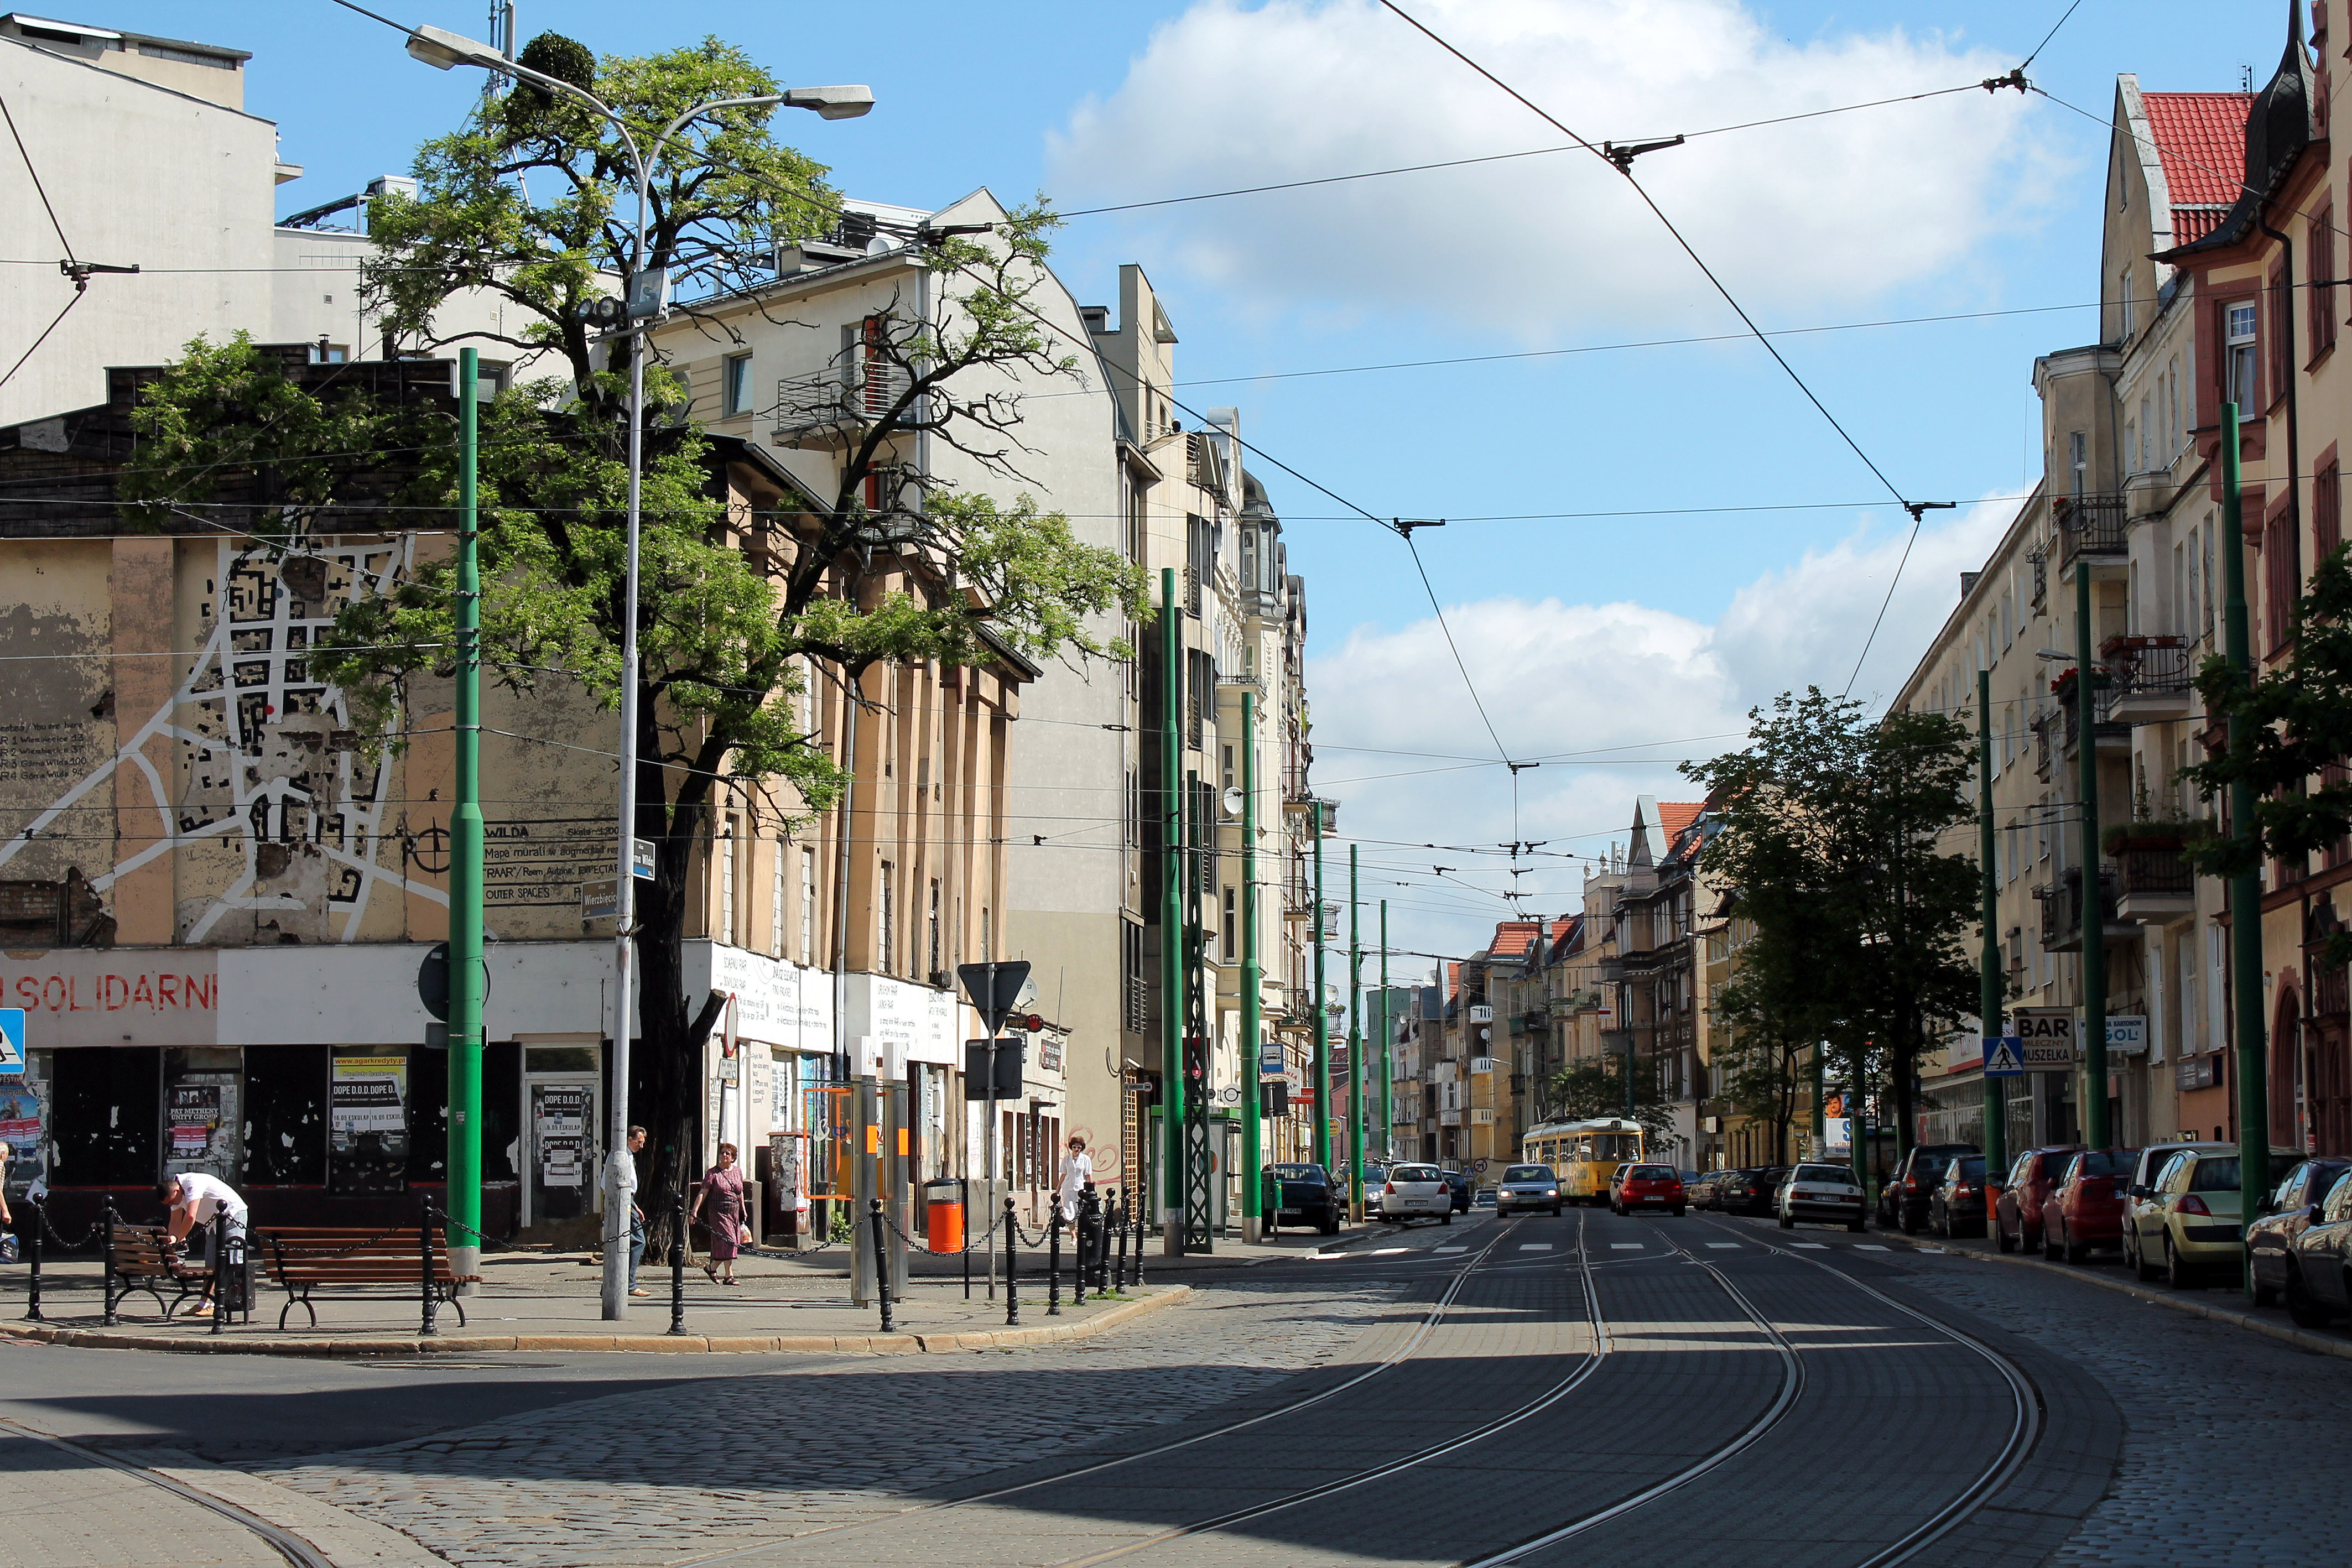 Ulica_Gorna_Wilda_w_Poznaniu_01 - Wikimedia Commons